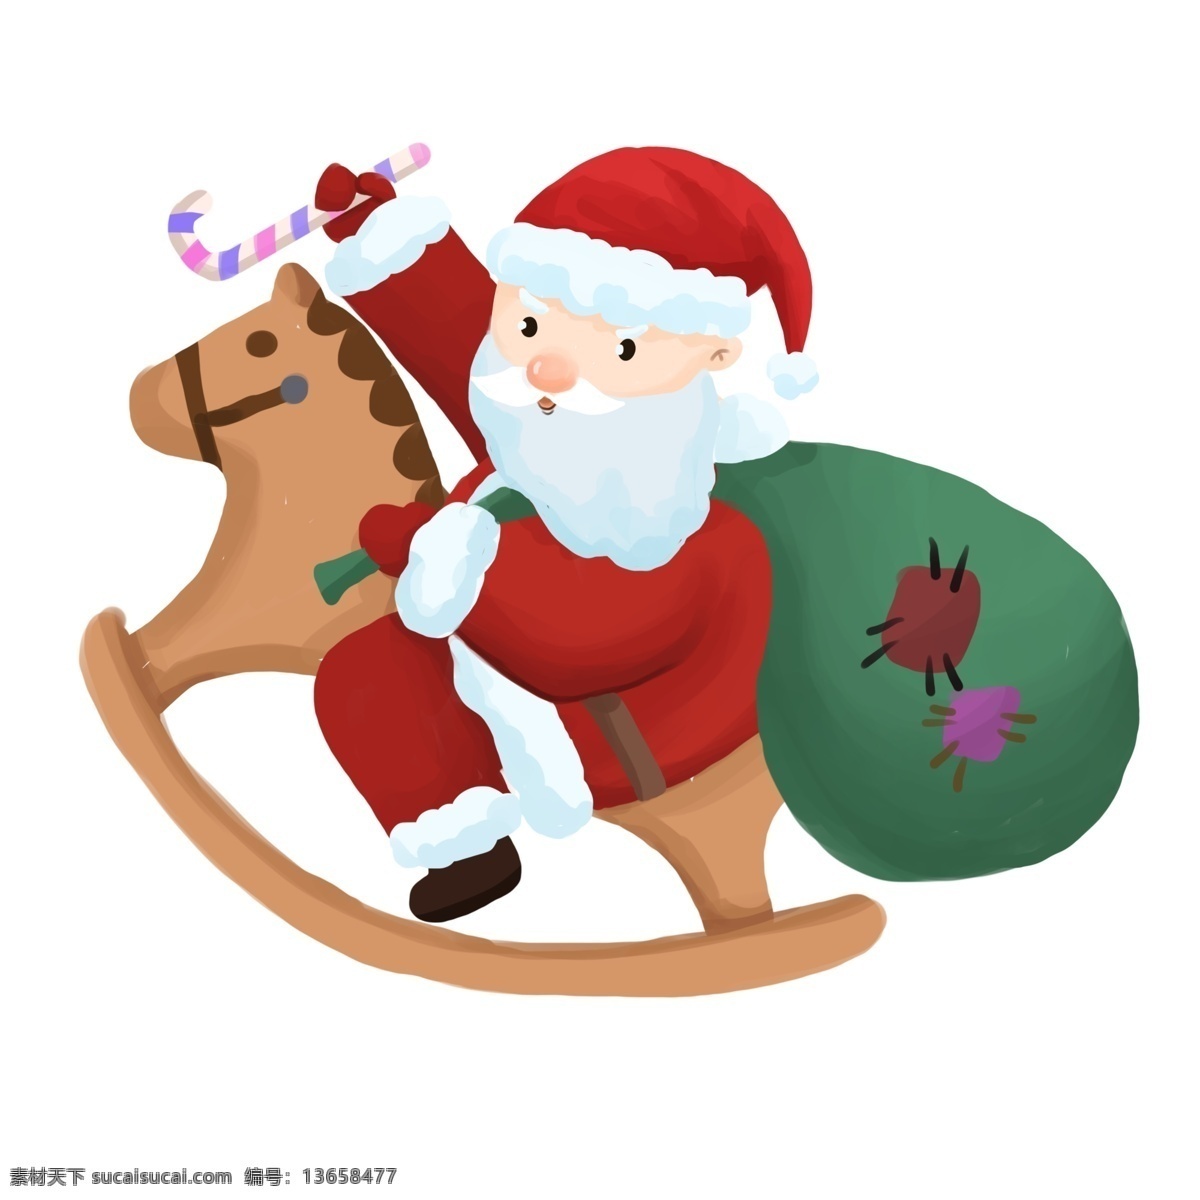 圣诞 红色 唯美 元素 插画 圣诞老人 圣诞节 骑木马 木马 圣诞爷爷 送礼物 礼物 西方节日 清新 可爱